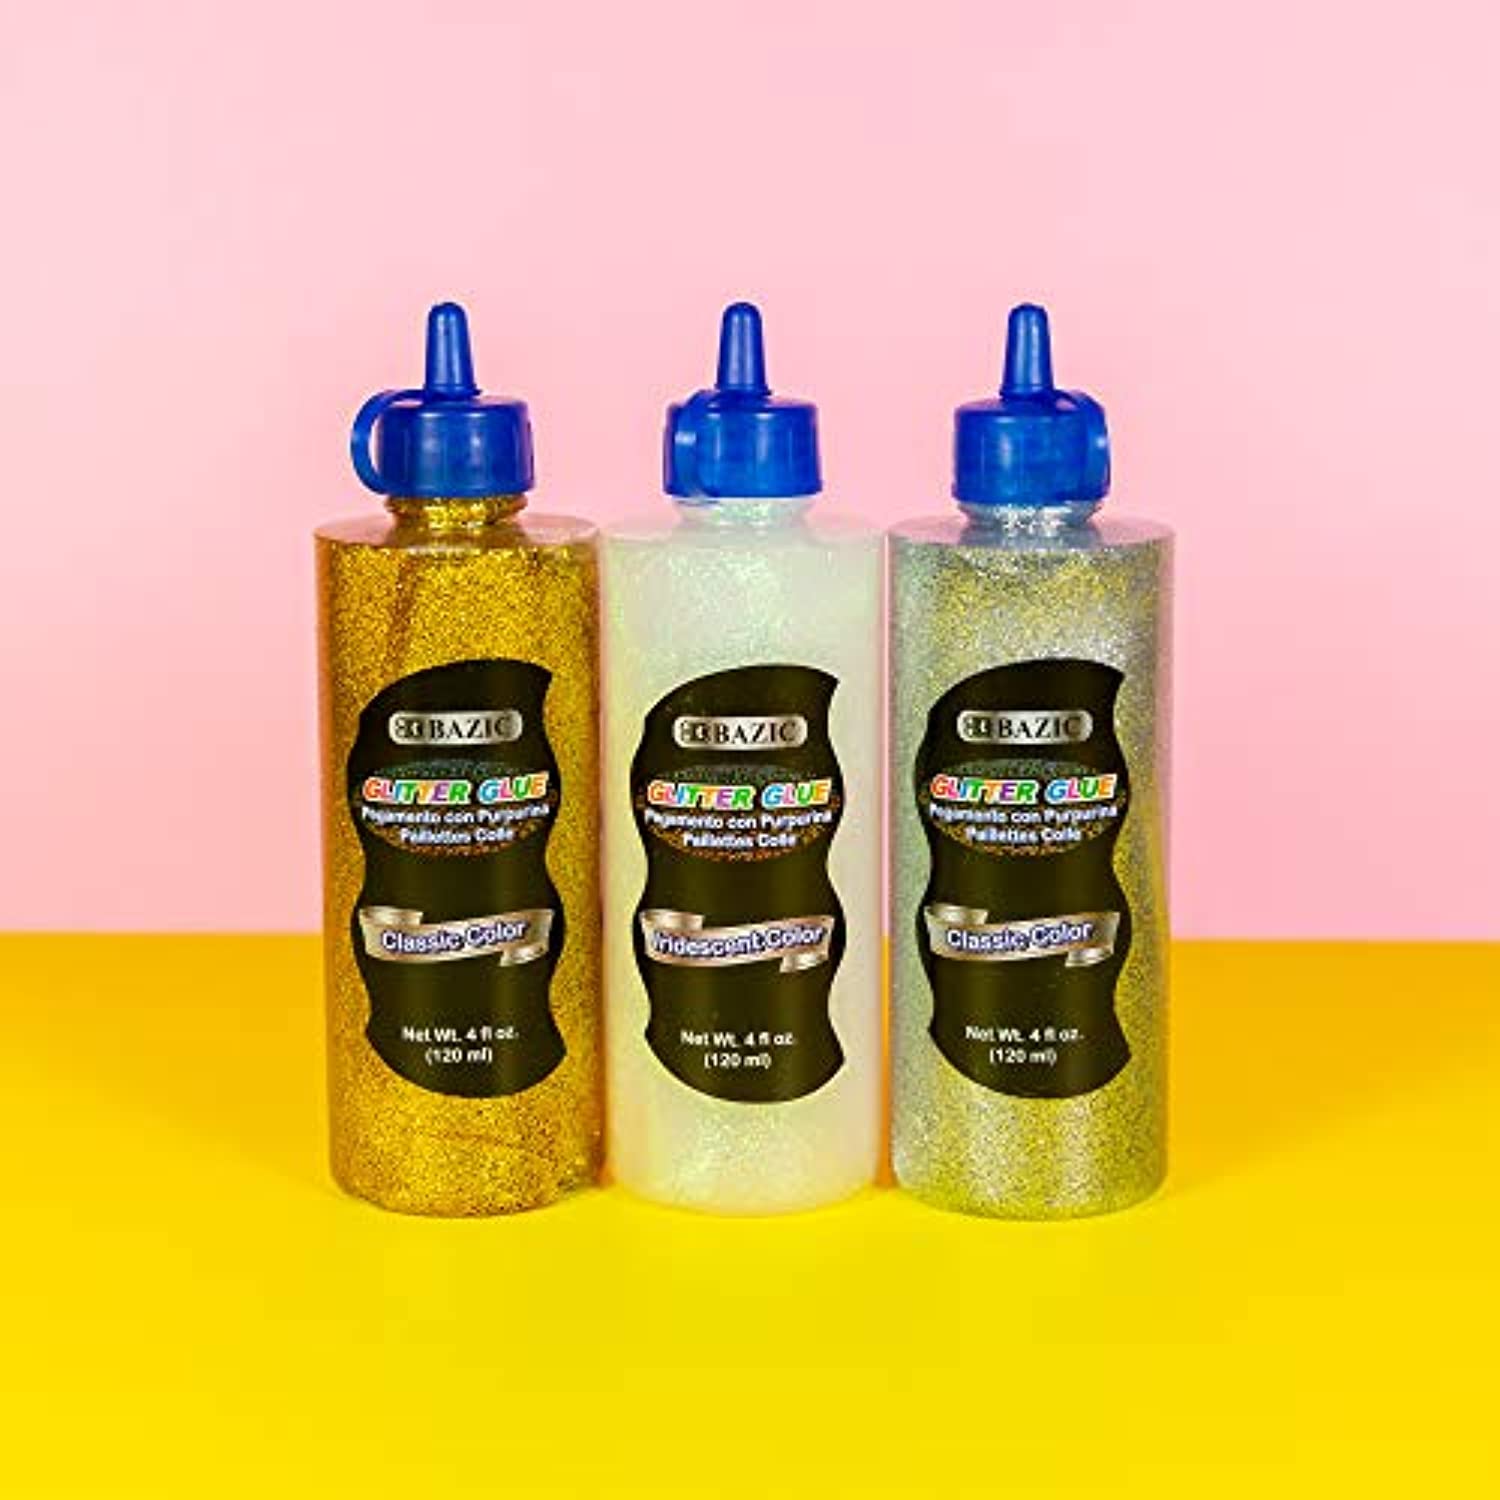 Metallic Color Glitter Glue Washable Glowing Non-toxic | 4FL OZ (120ml)